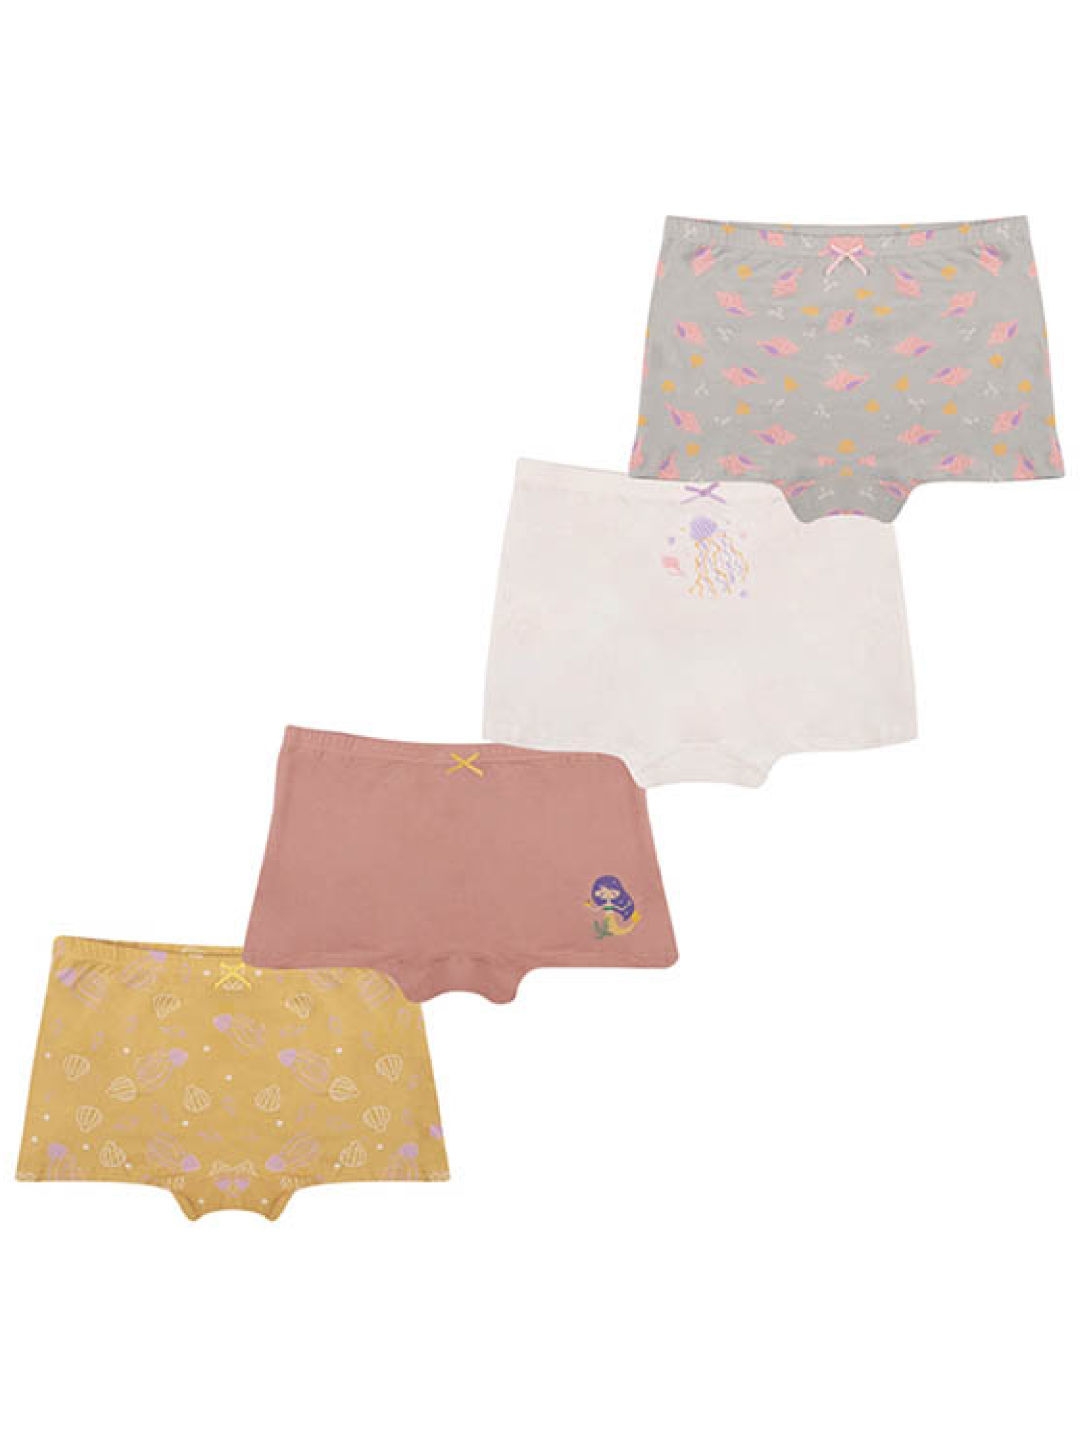 Uni-care Disposable Underwear for Women Medium 66-76cm (6s)